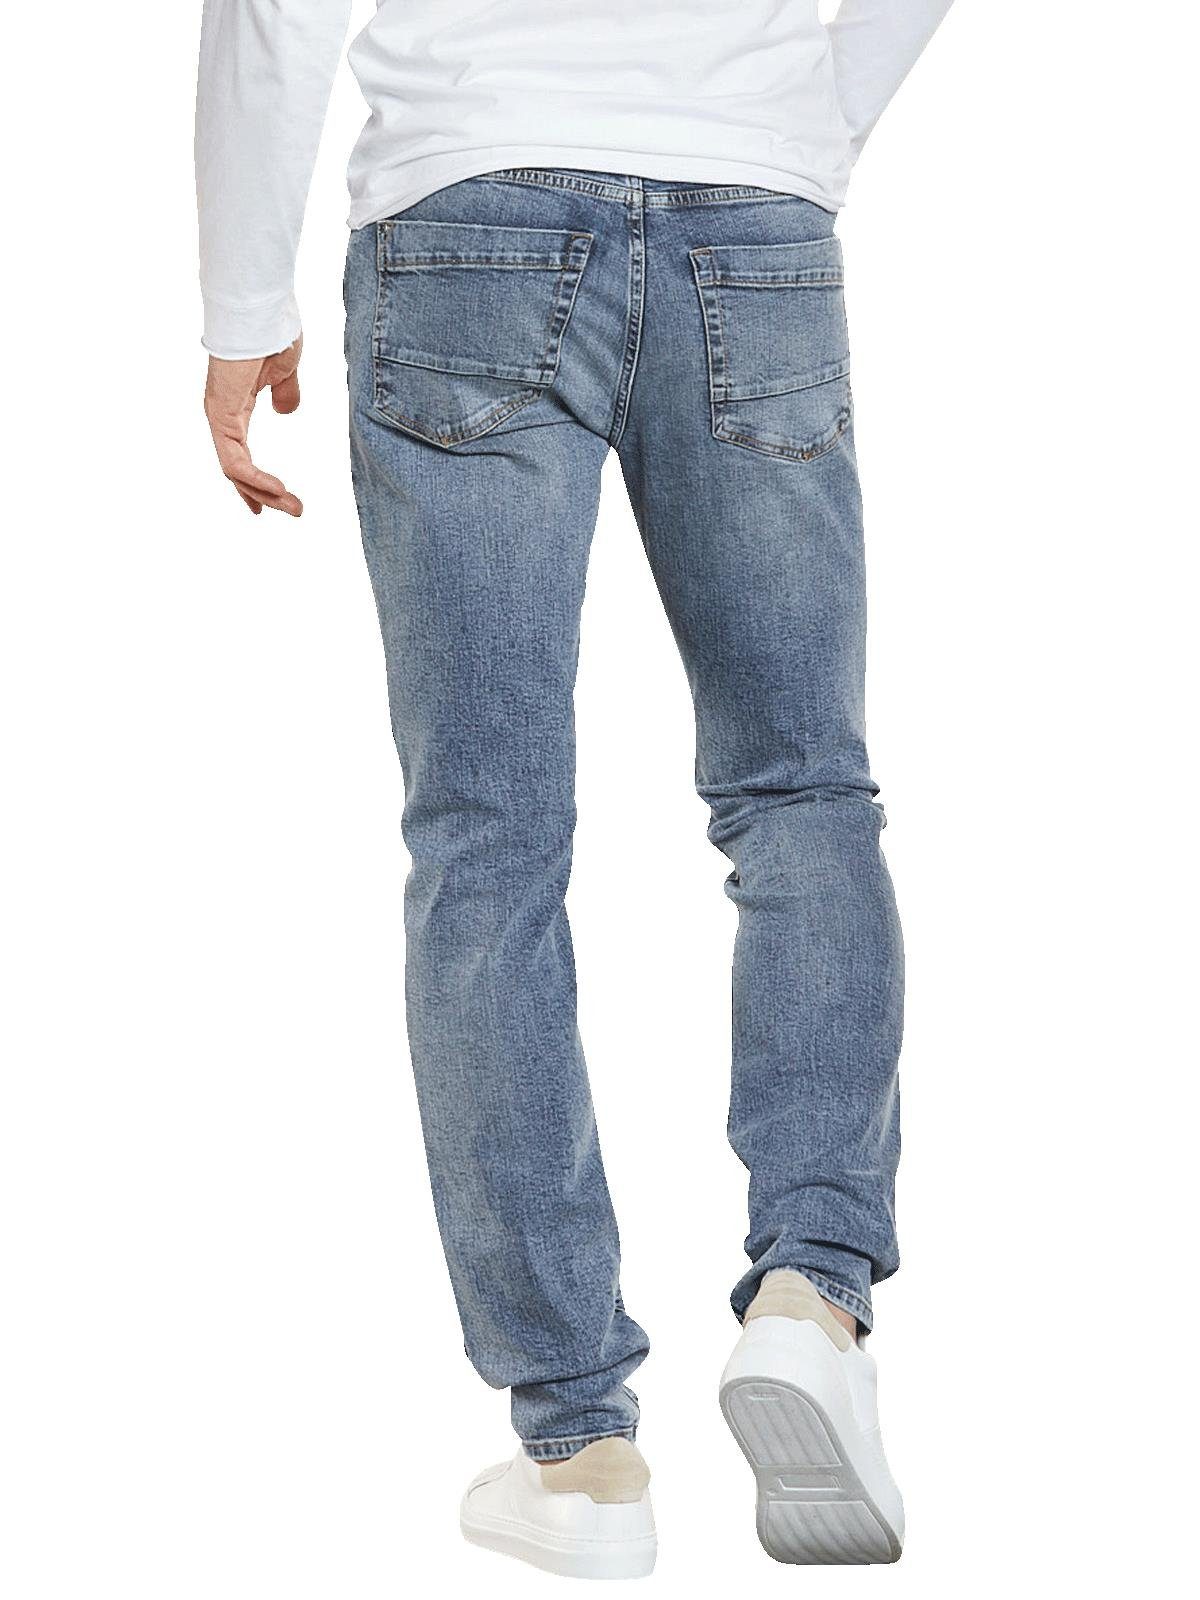 emilio adani Stretch-Jeans Slim Super-Stretch-Jeans Fit